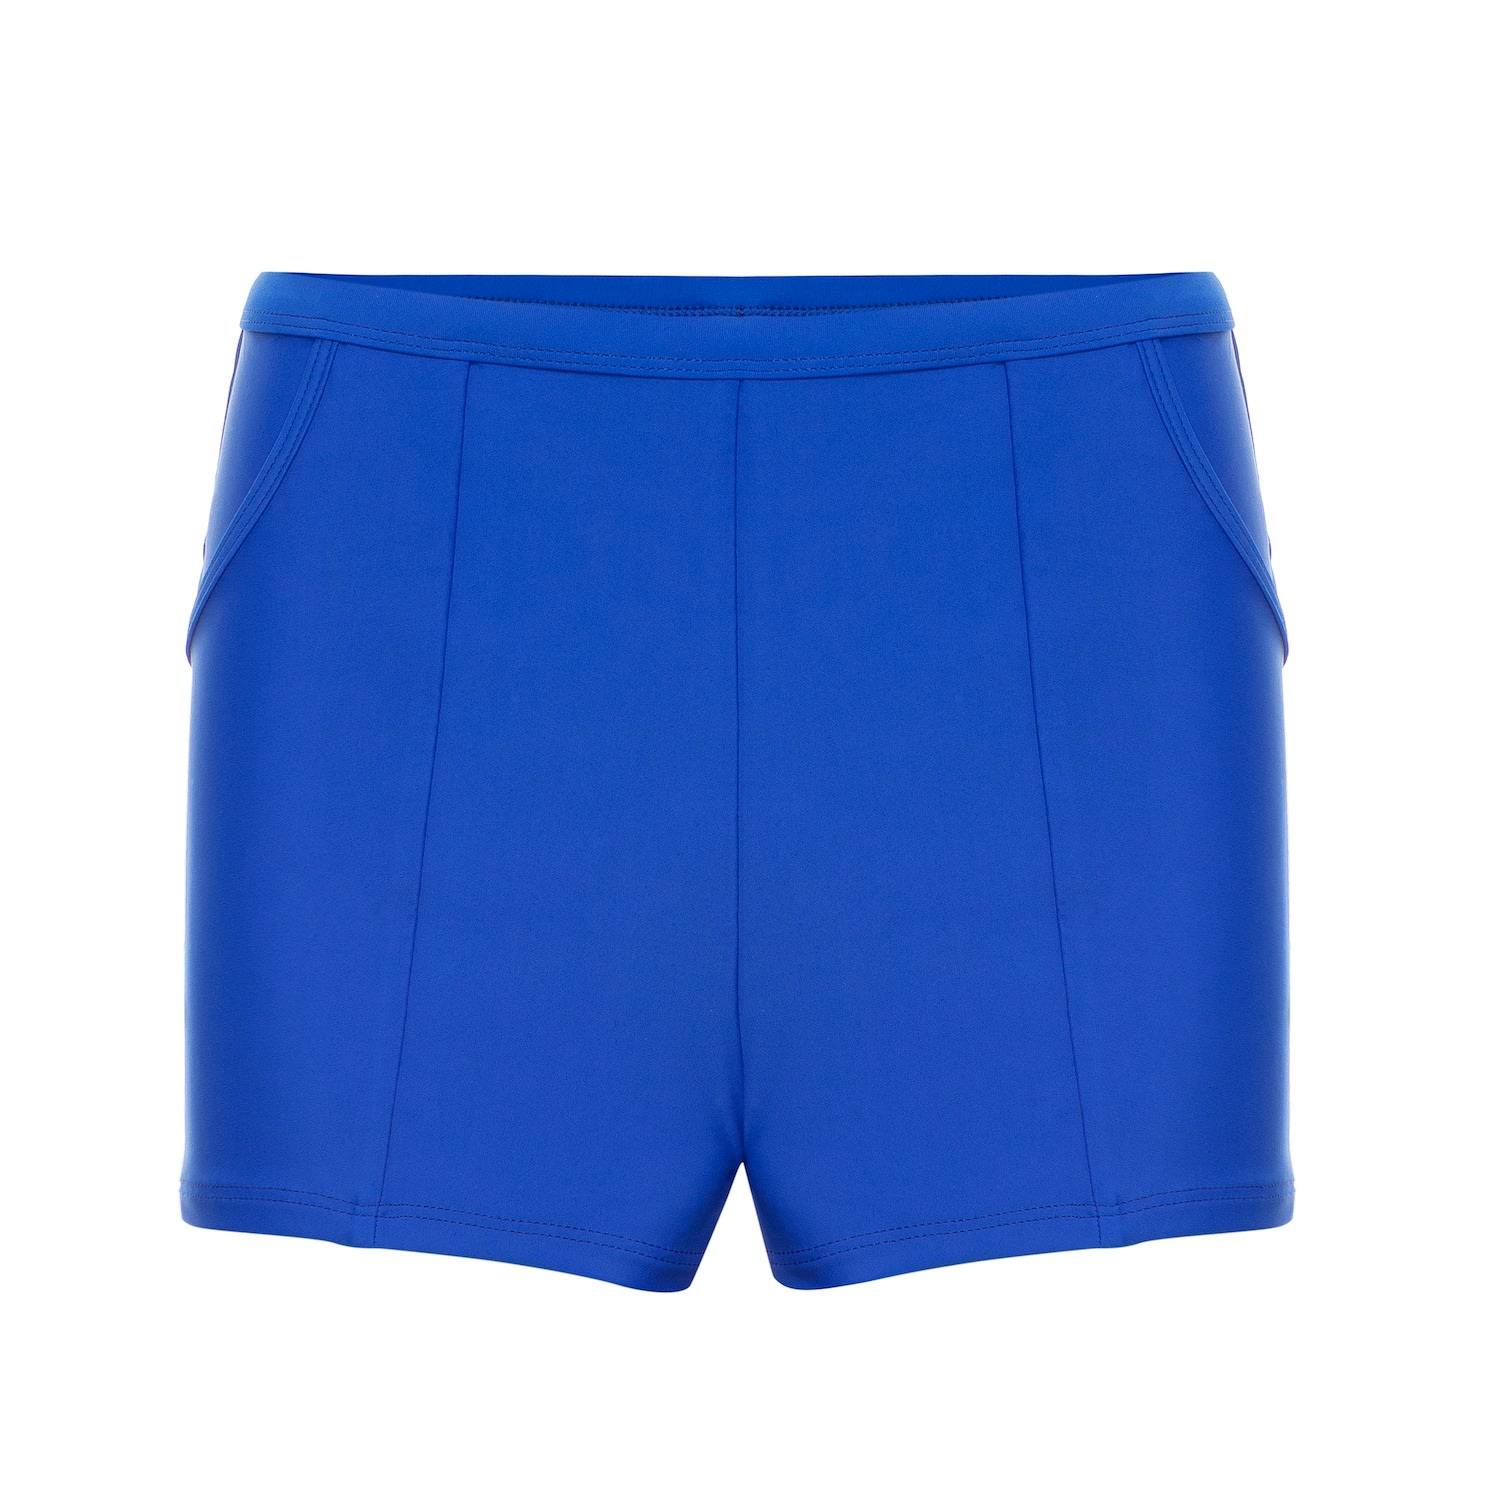 Women's Ally Boy Short With Pockets - Blue Extra Small MIGA Swimwear